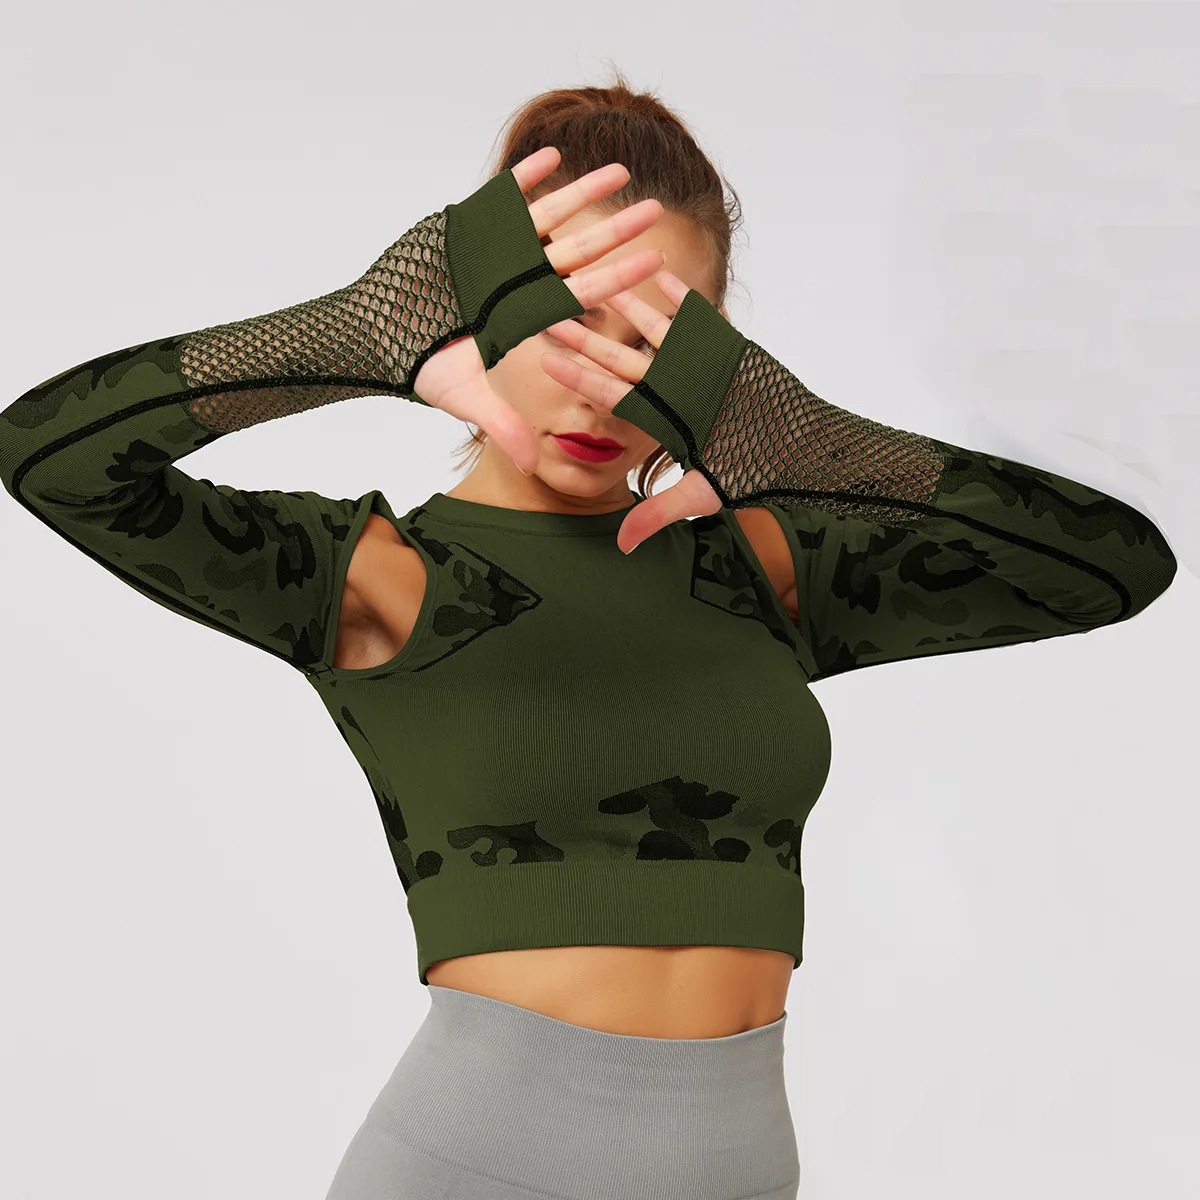 Женский спортивный термальный Камуфляжный сетчатый топ для йоги с длинным рукавом, бесшовный облегающий топ для фитнеса с вырезами, спортивный костюм, компрессионный спортивный костюм S